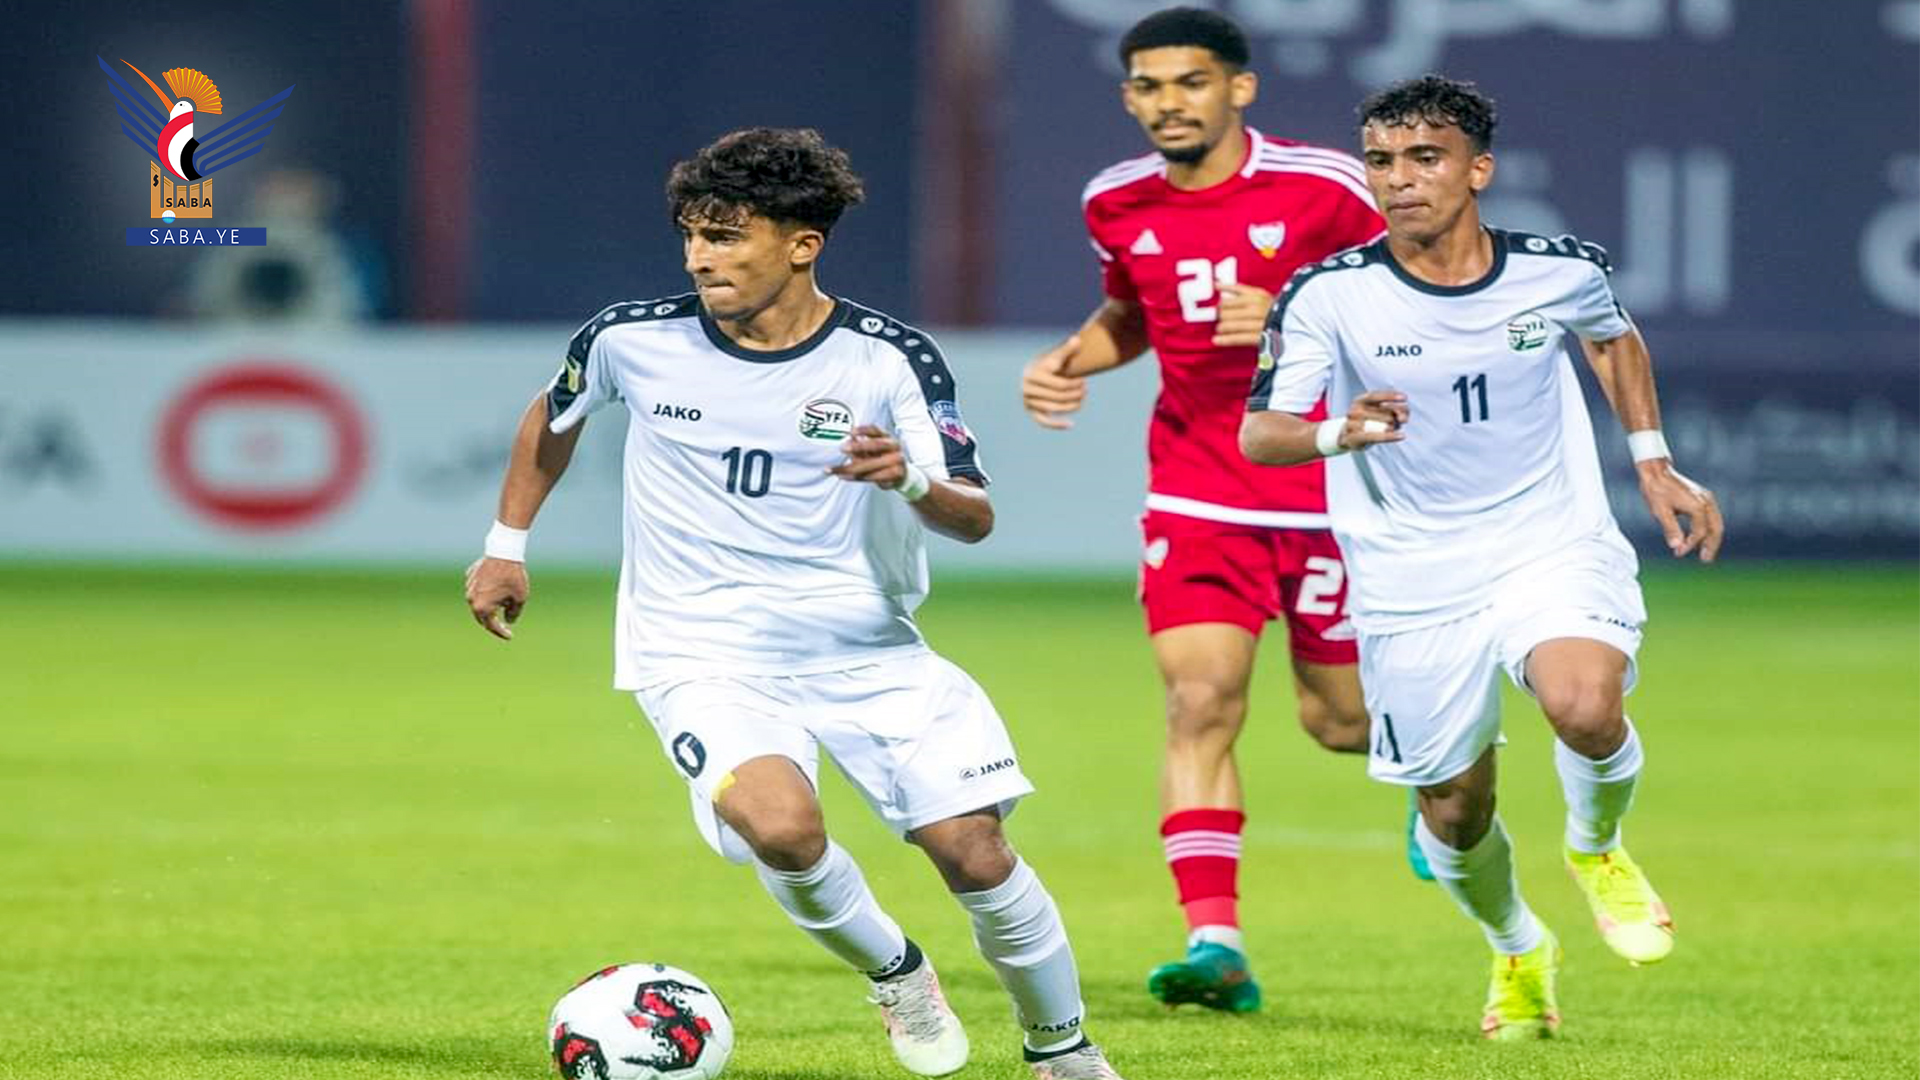 المنتخب الوطني للشباب يحجز بطاقة العبور إلى ربع نهائي كأس العرب